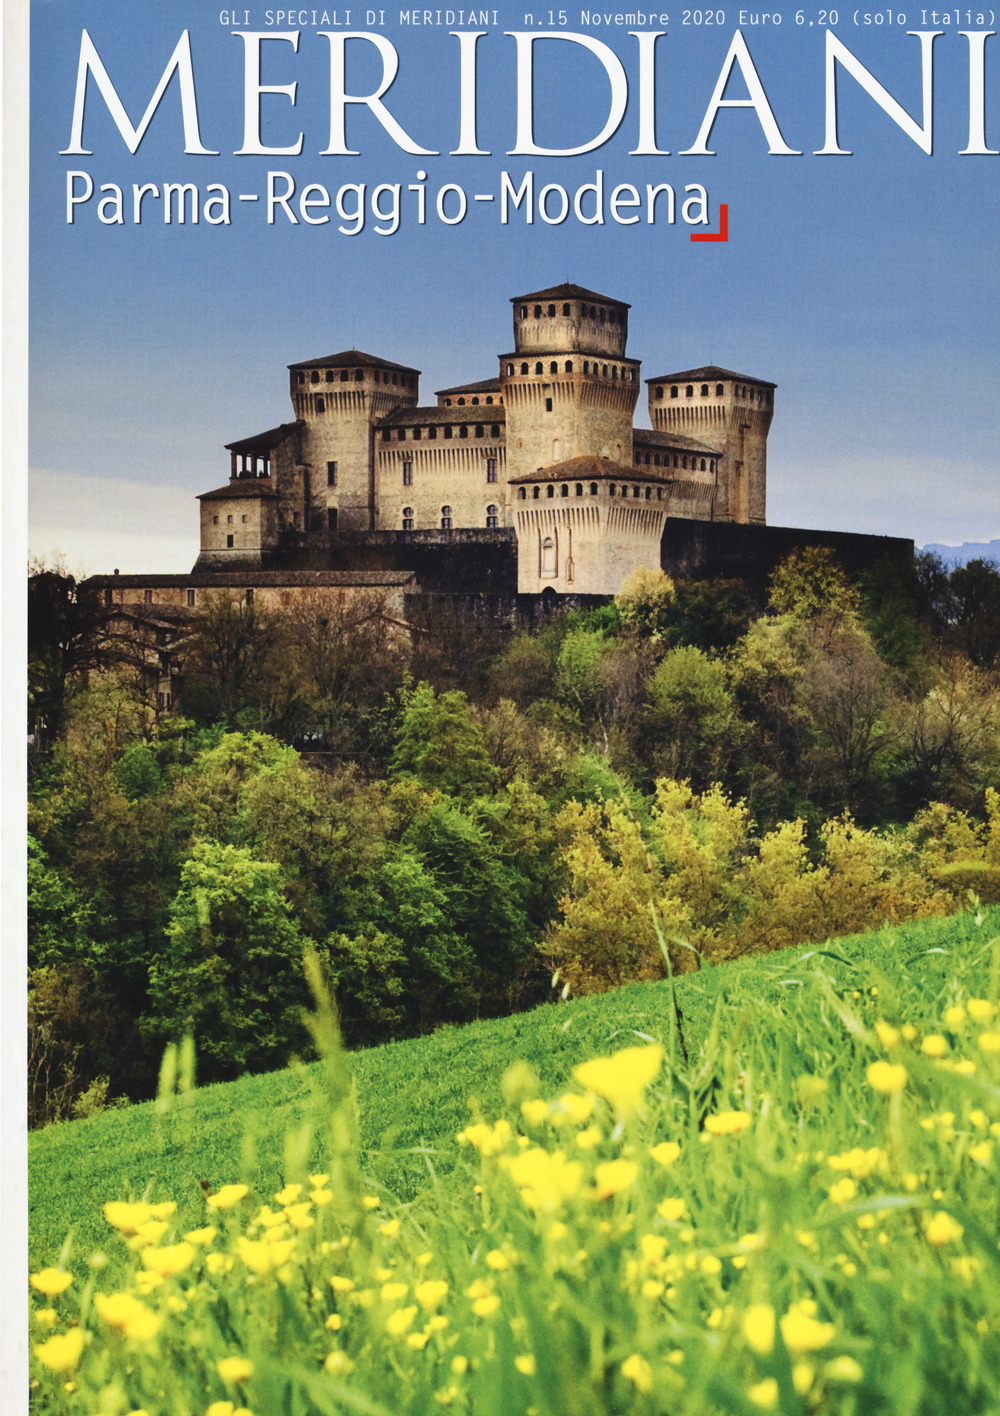 Parma-Reggio-Modena